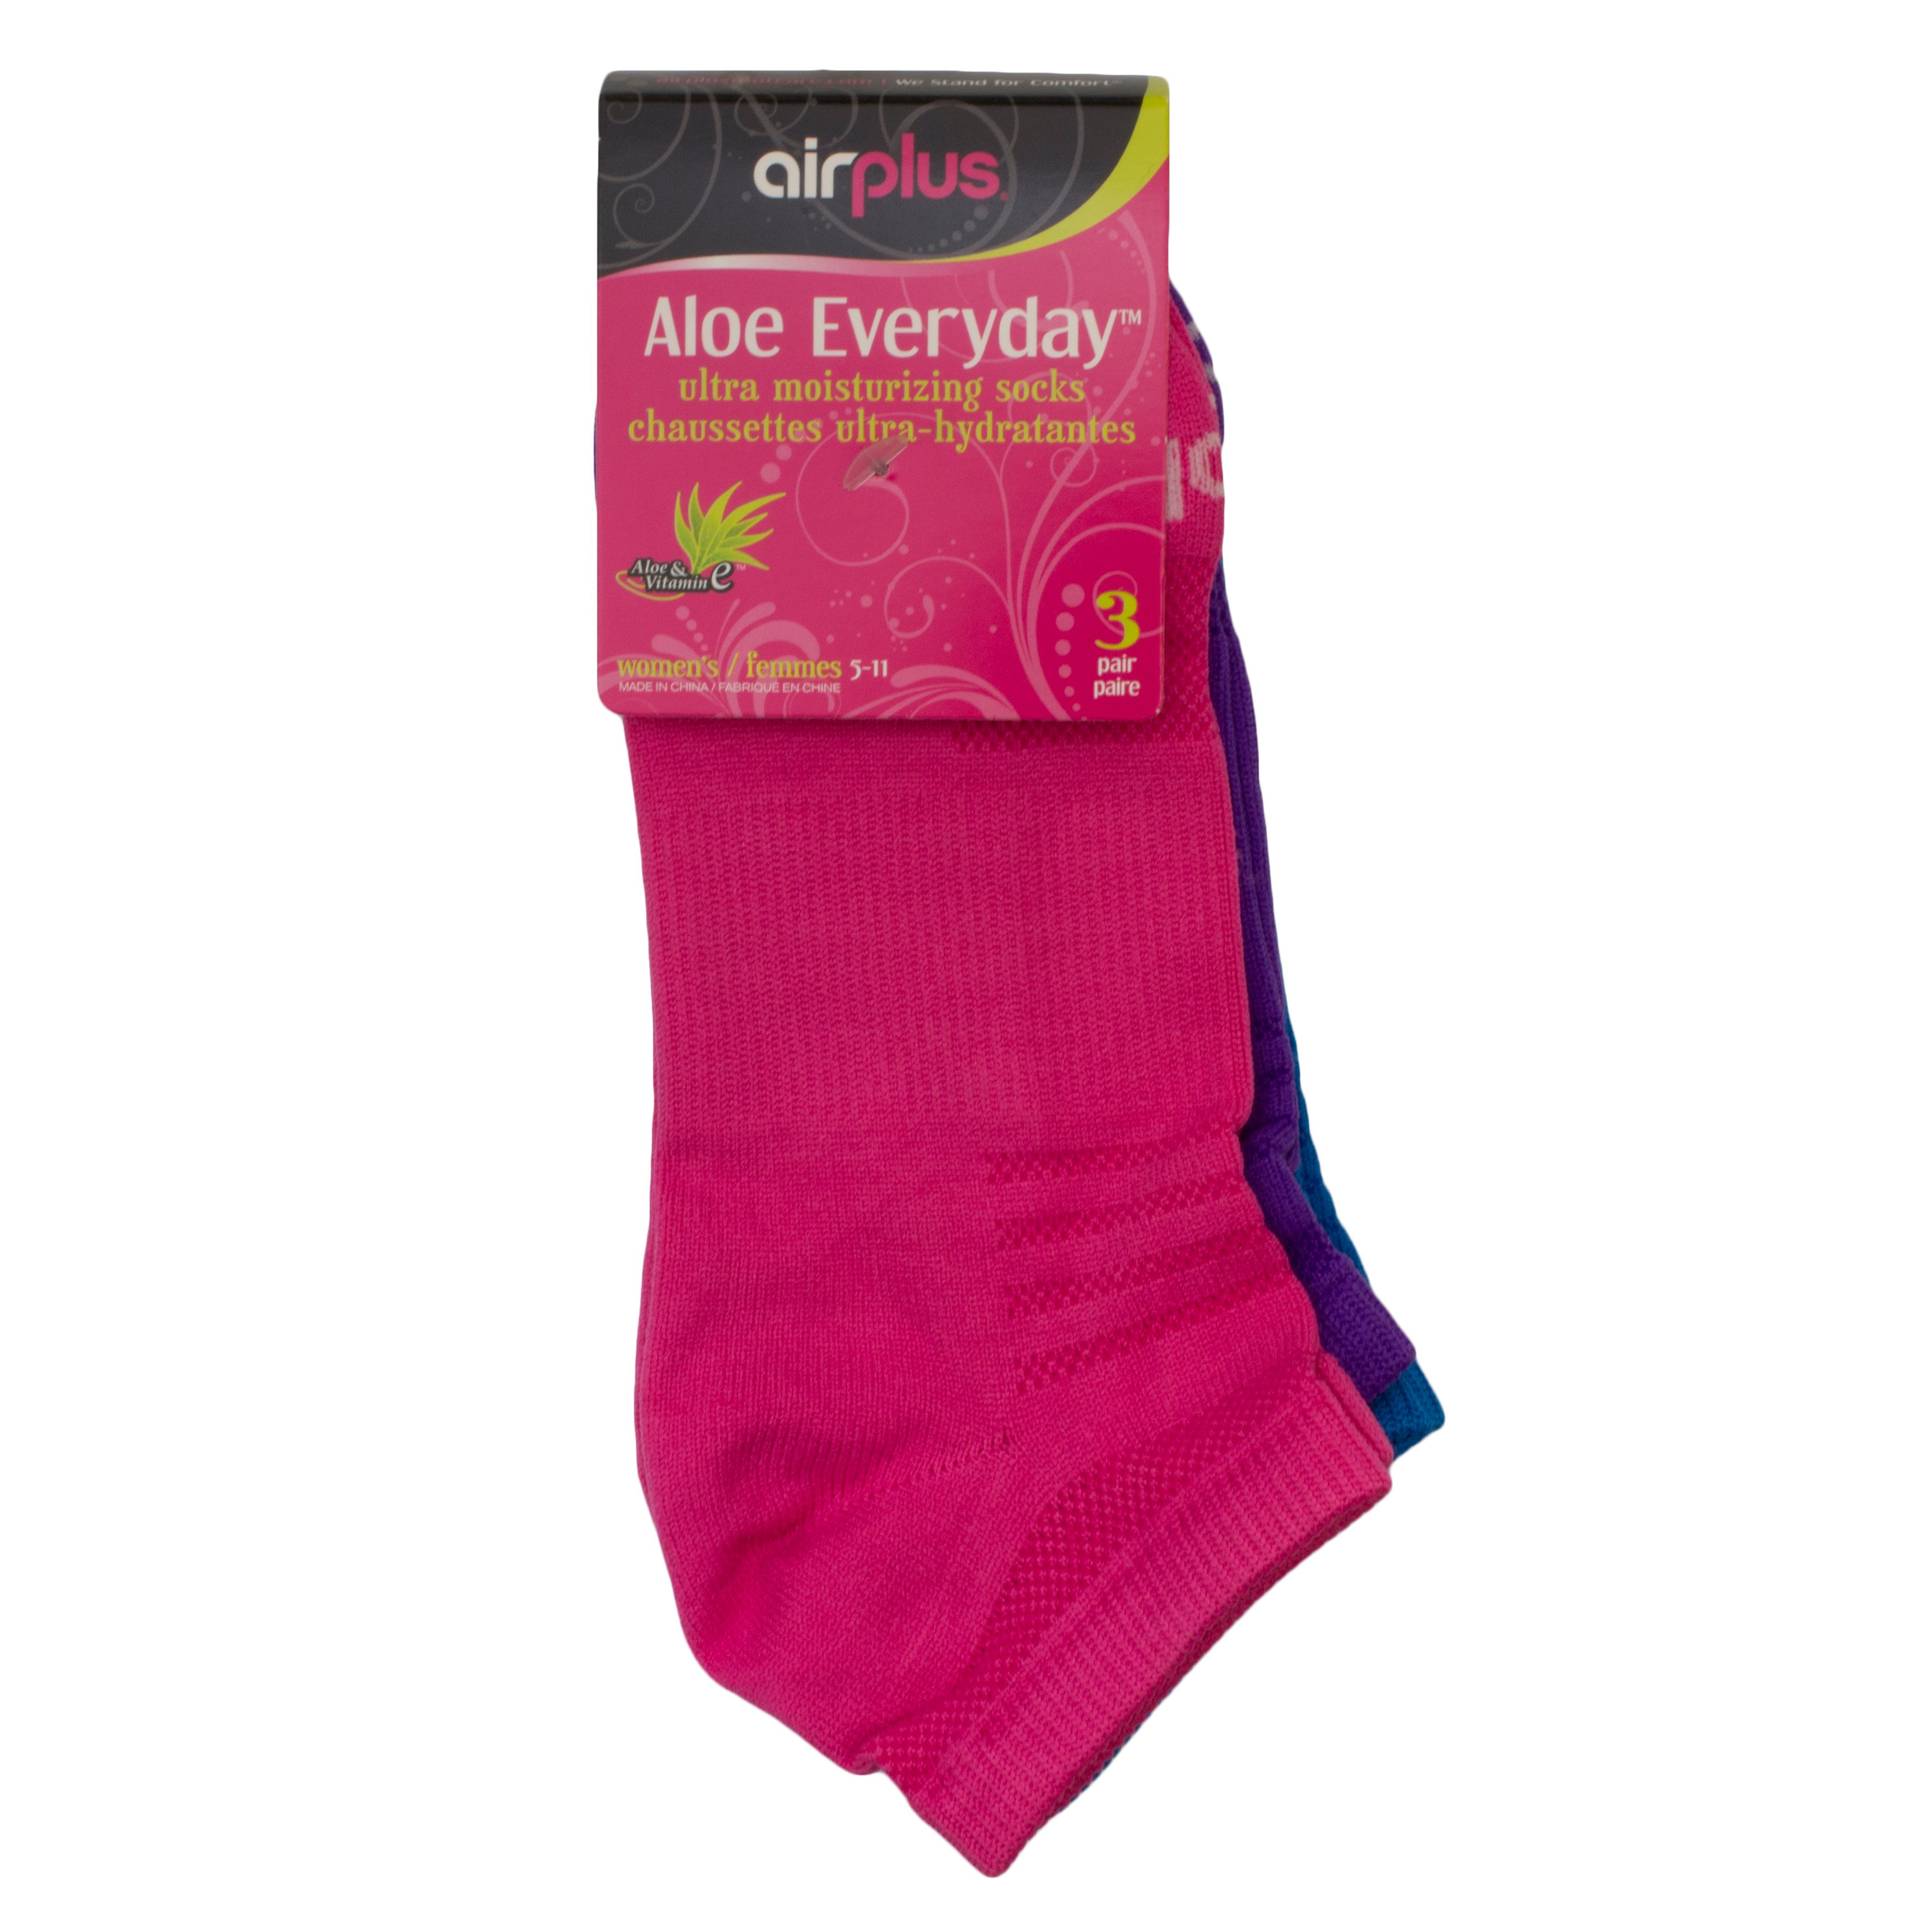 Airplus Aloe Everyday Socks - Shop Socks & Hose at H-E-B